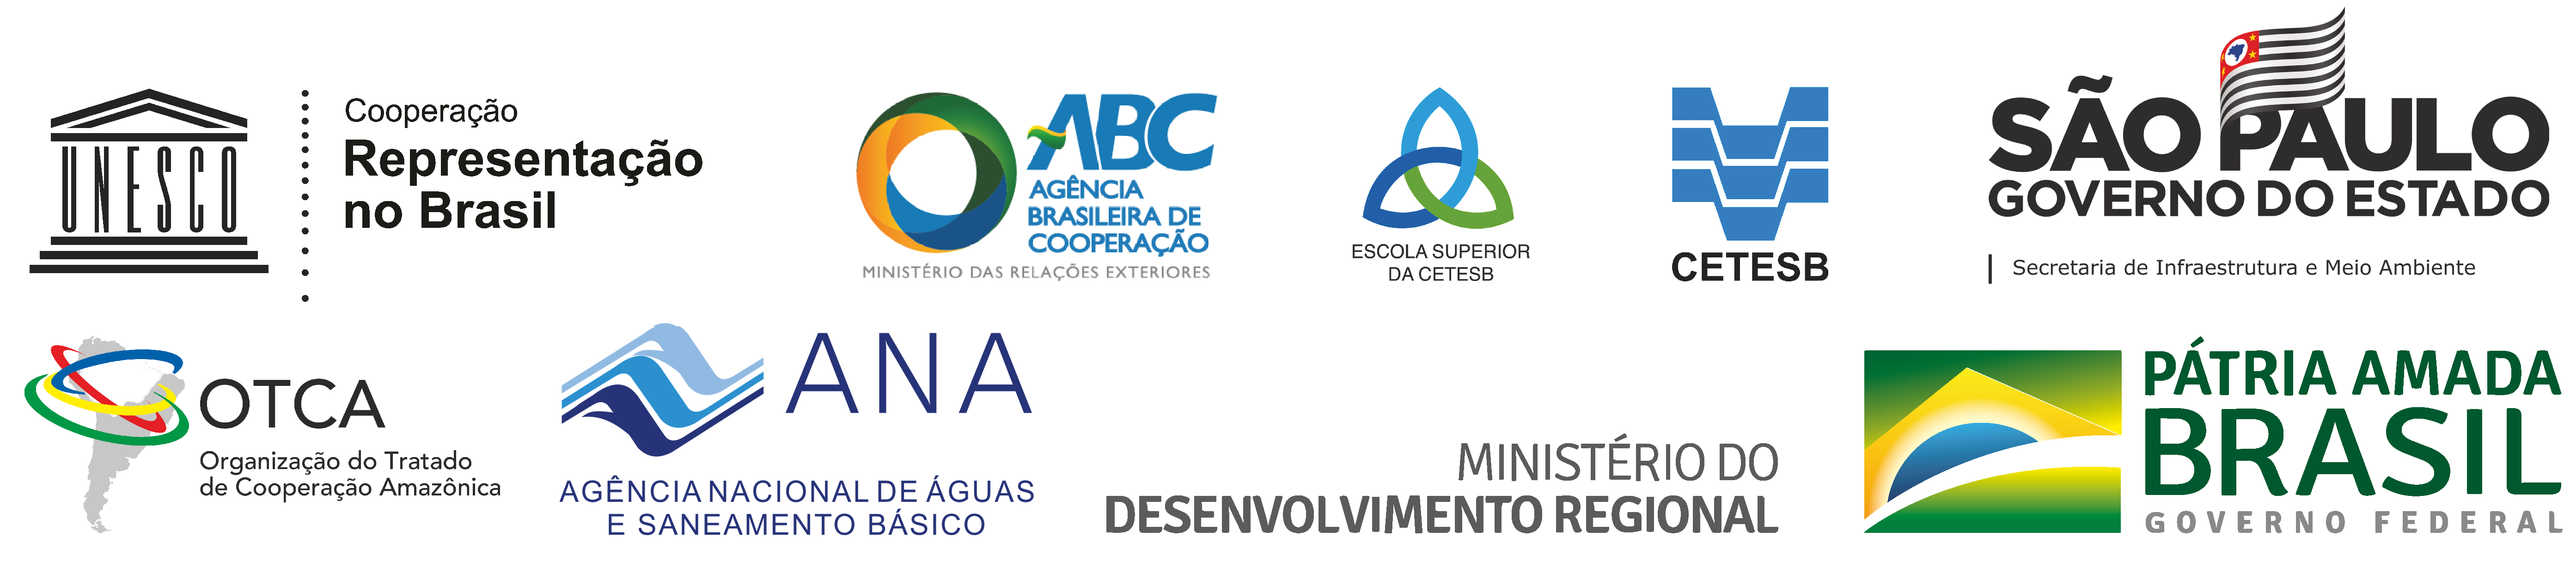 Logo CETESB ANA ABC Atualizada